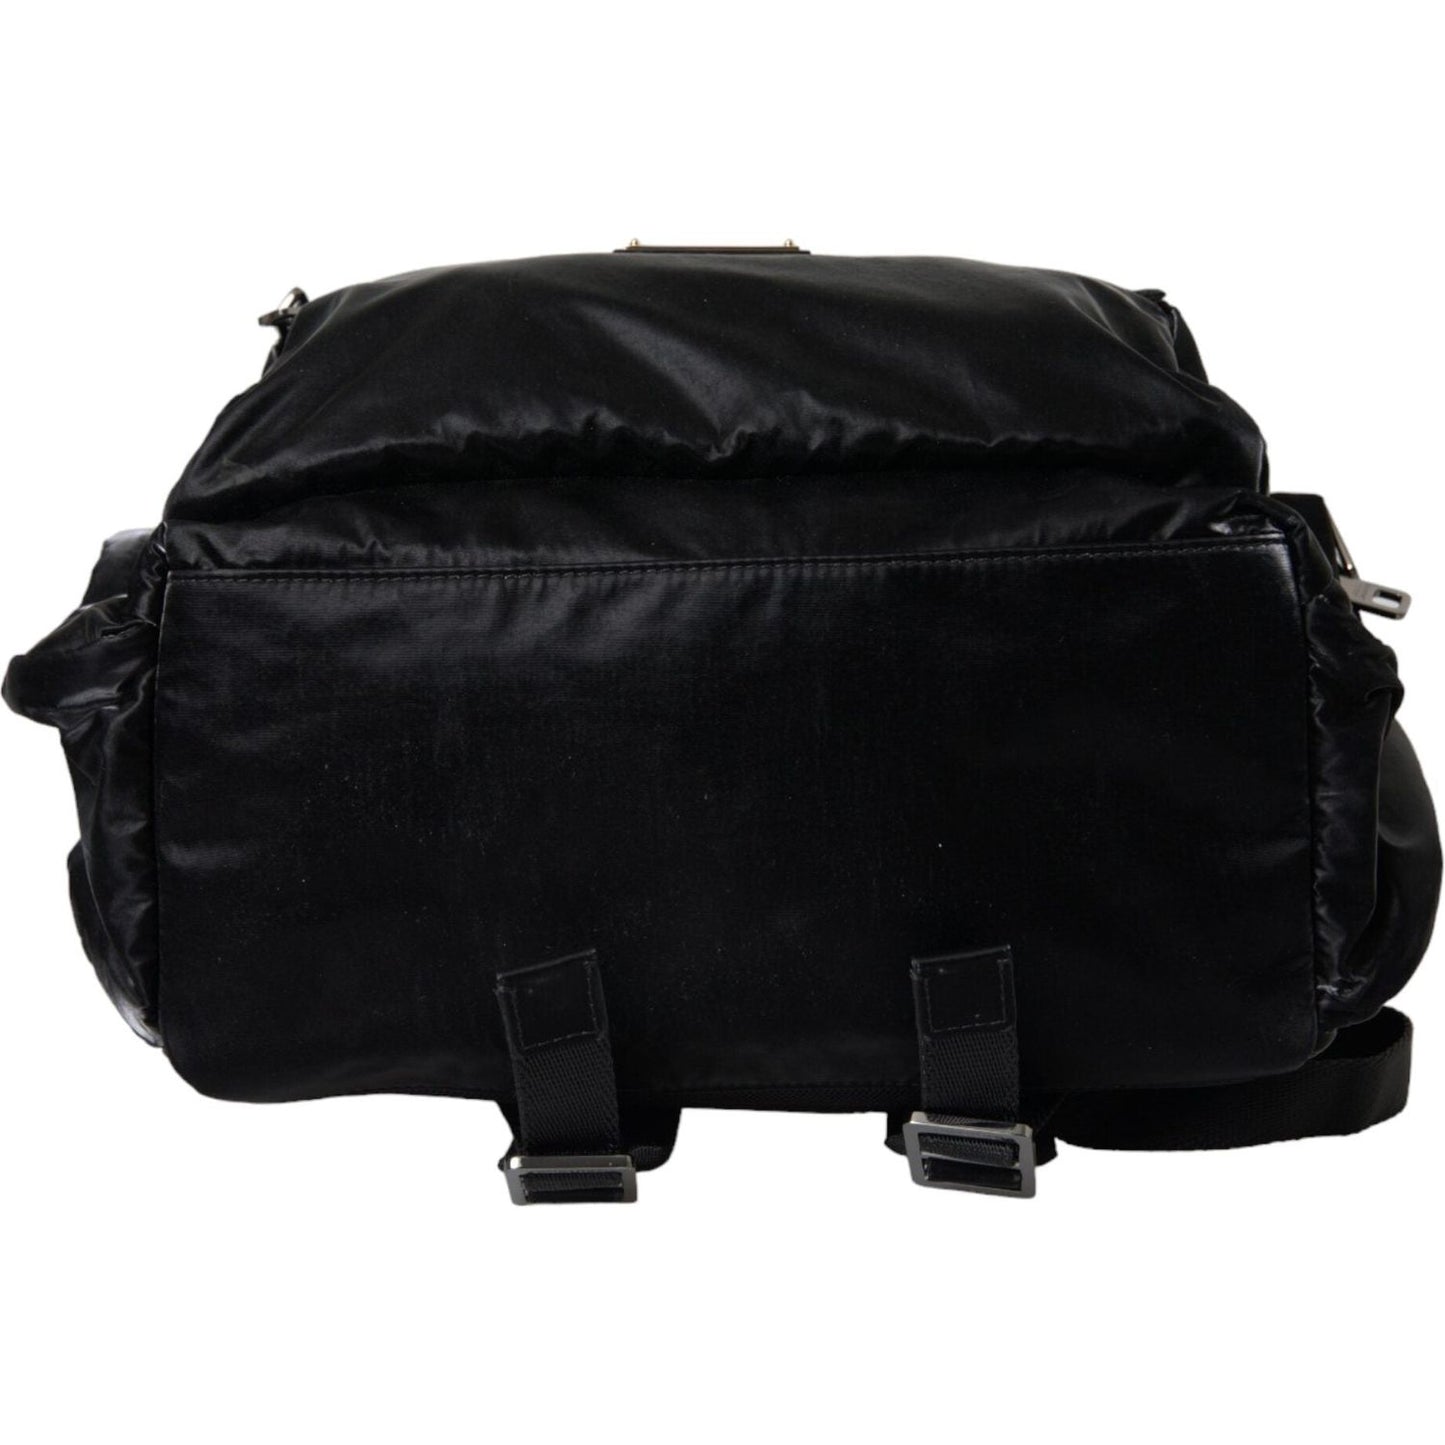 Black Patent Leather Logo Plaque Backpack Bag